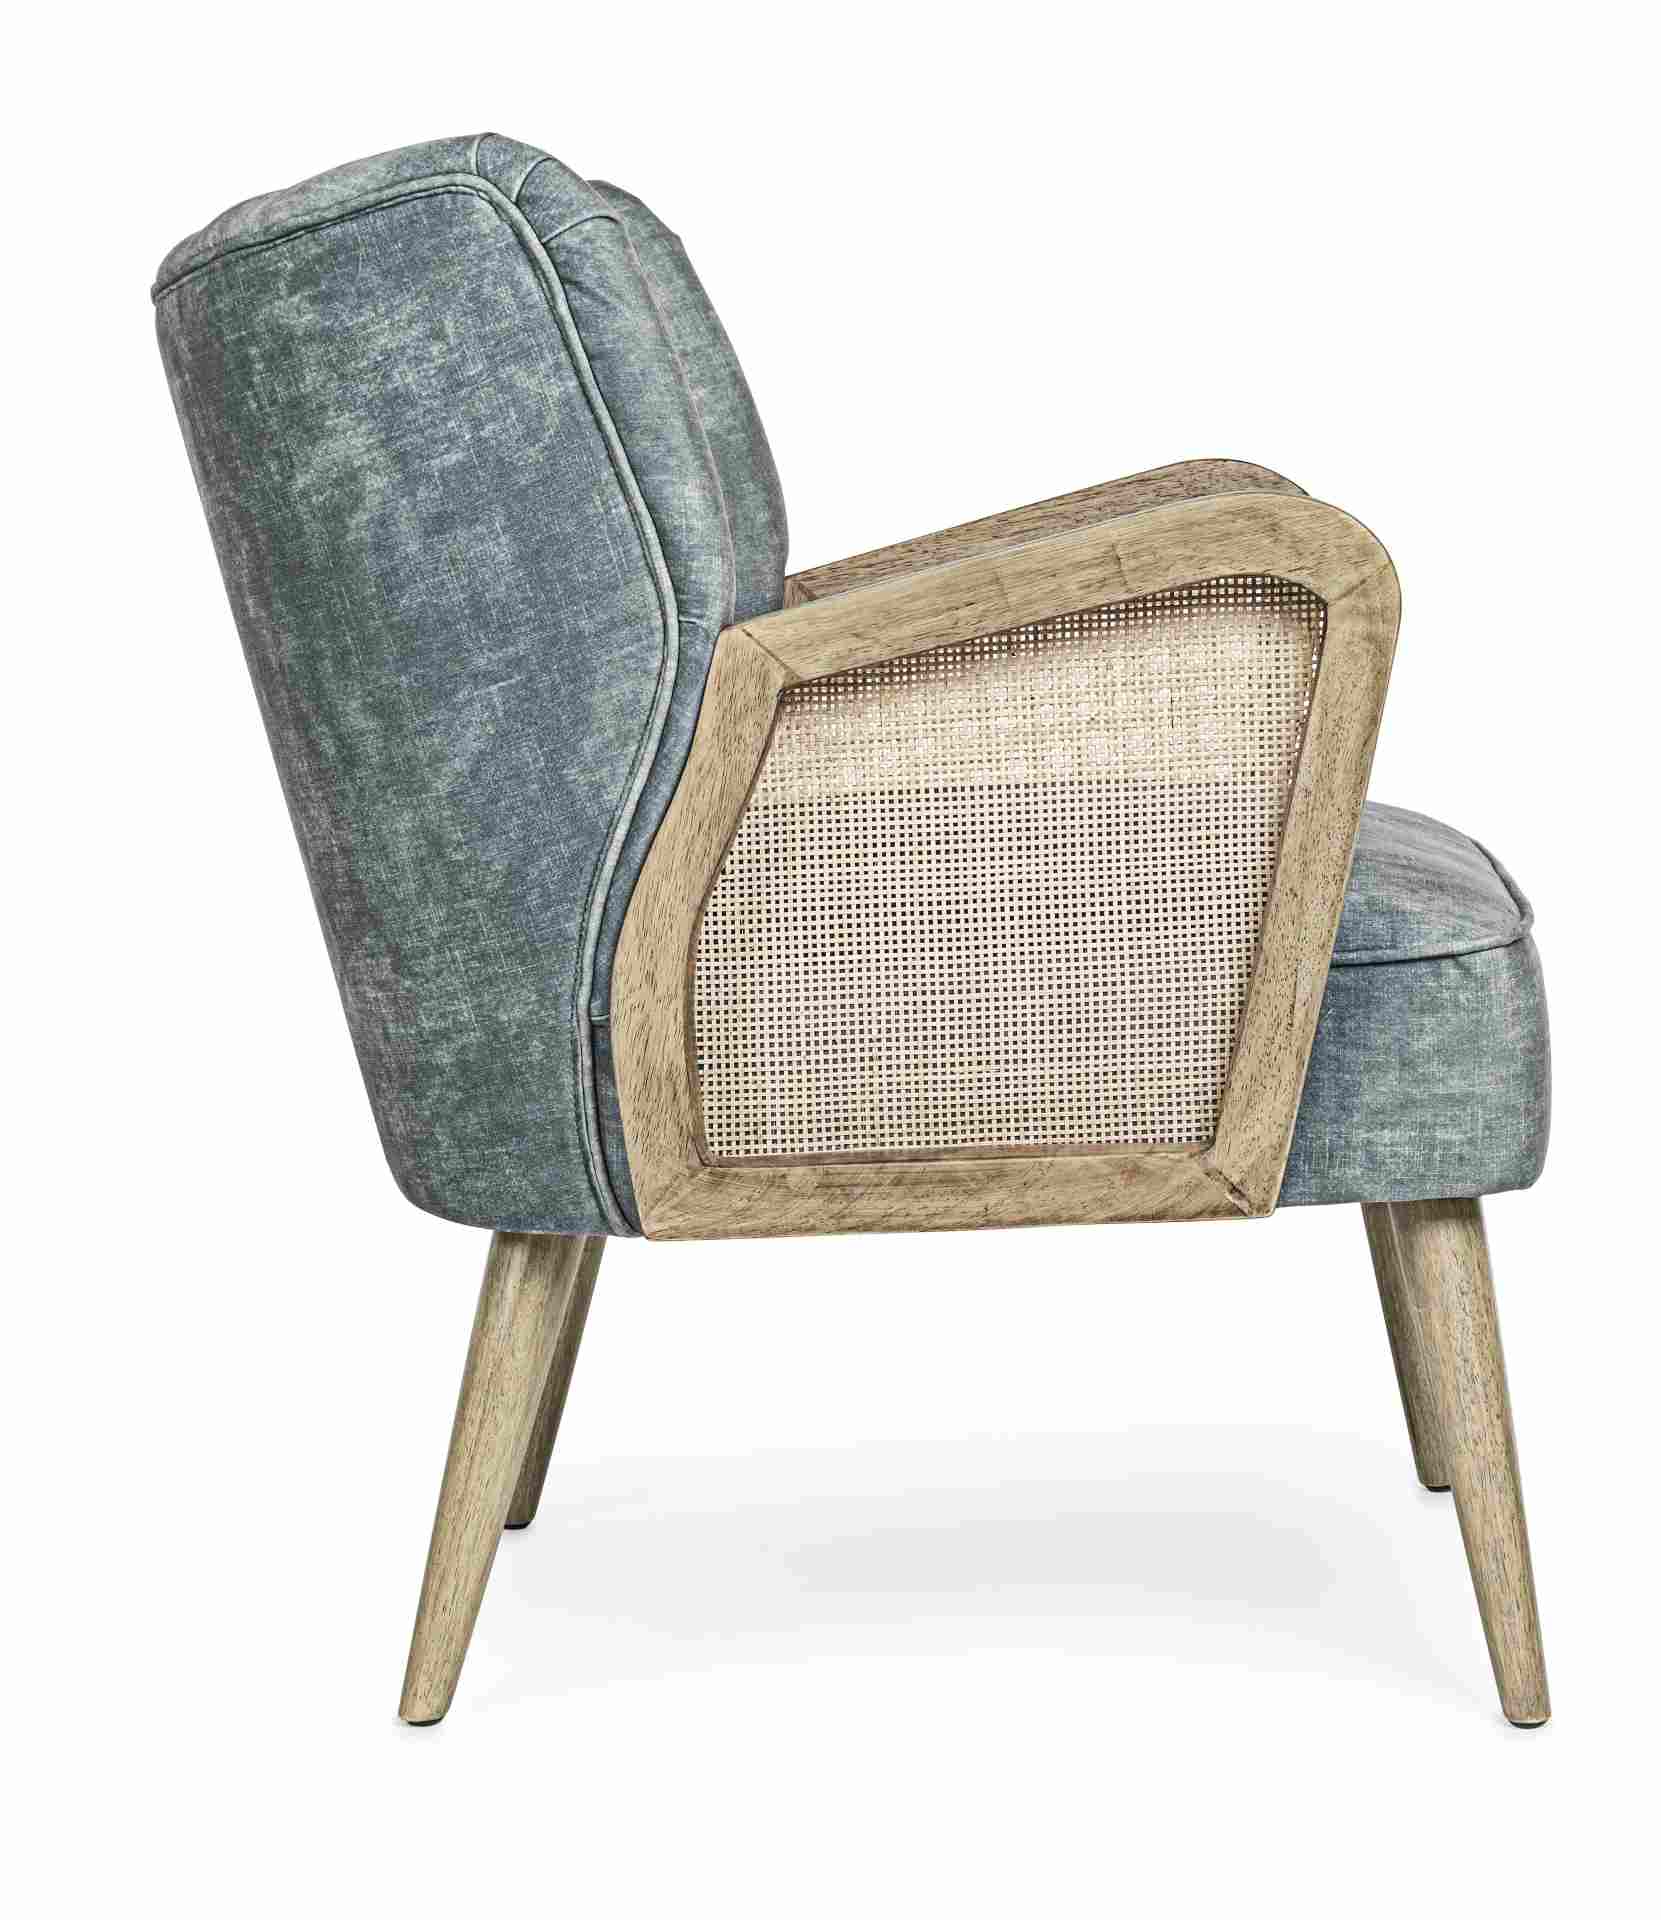 Der Sessel Virna überzeugt mit seinem modernen Design. Gefertigt wurde er aus Stoff in Samt-Optik, welcher einen blauen Farbton besitzt. Das Gestell ist aus Kautschukholz und hat eine natürliche Farbe. Der Sessel besitzt eine Sitzhöhe von 44 cm. Die Breit